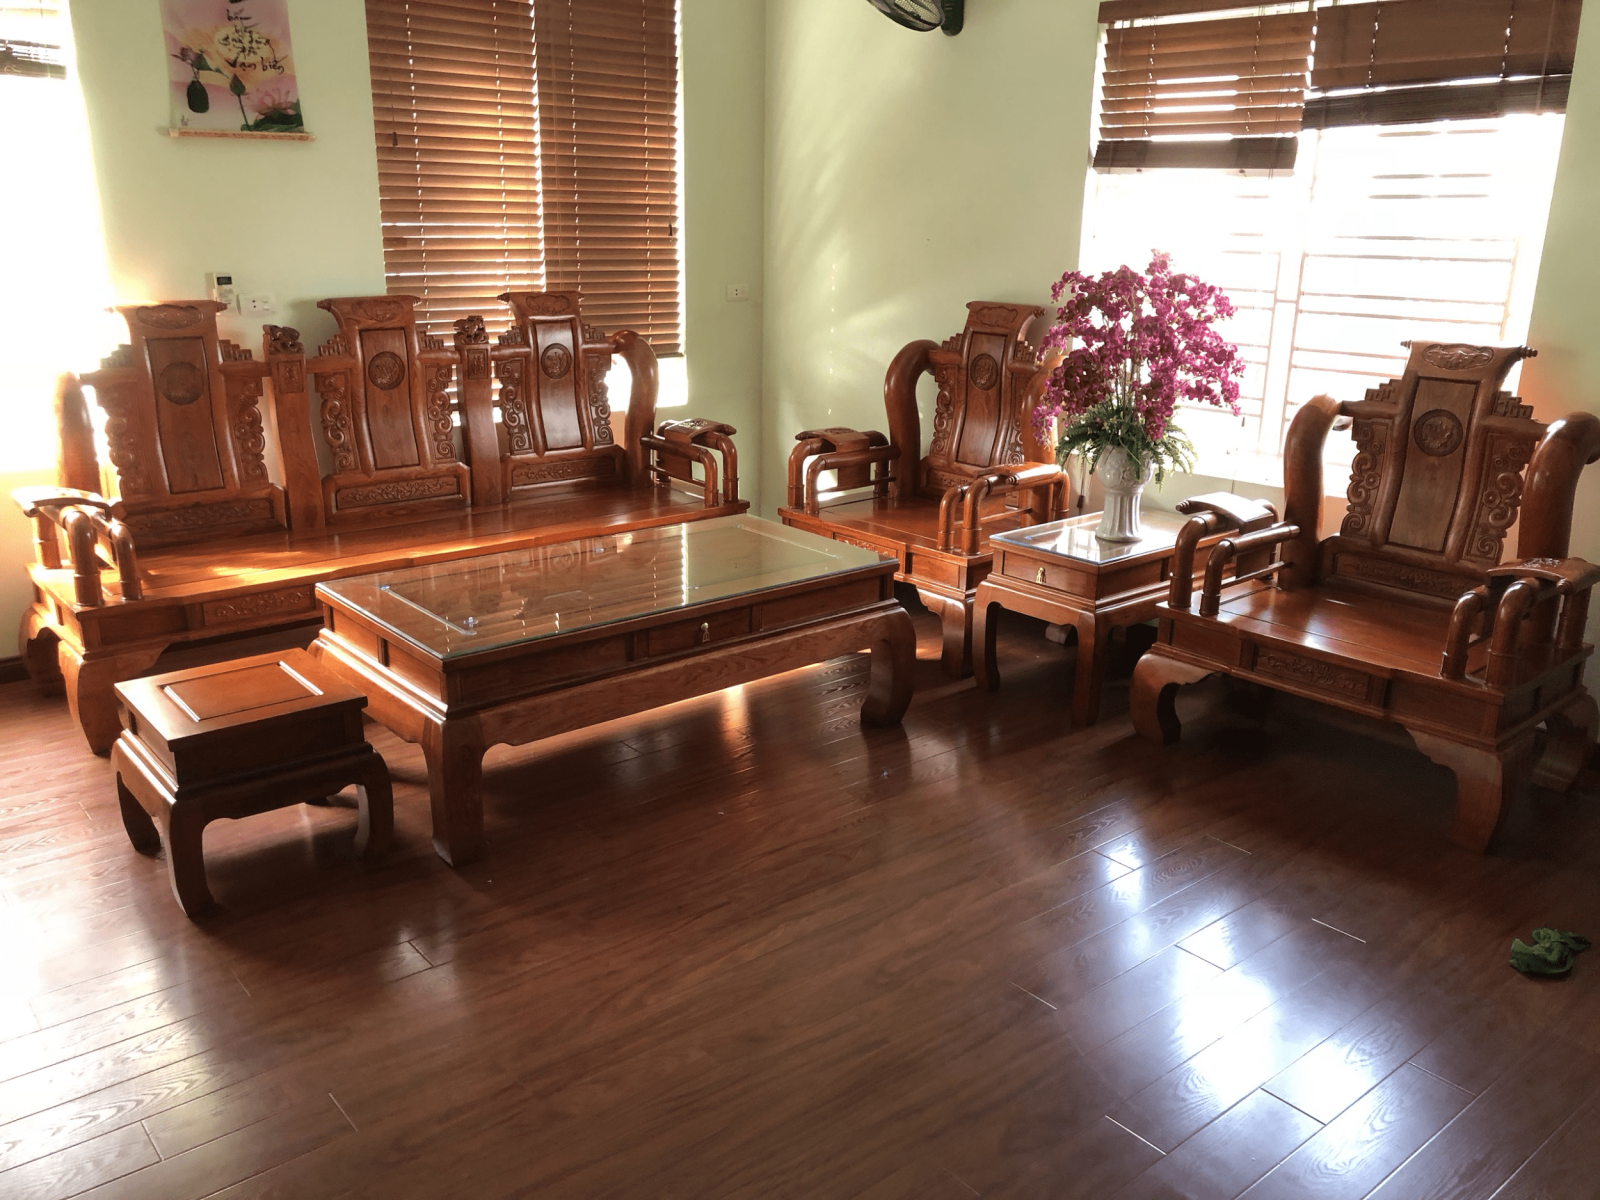 Bàn ghế phòng khách gỗ hương sang trọng: Với phong cách thiết kế sang trọng và tinh tế, bộ bàn ghế gỗ hương sẽ làm tăng vẻ đẹp của căn phòng. Chất liệu gỗ cao cấp, chắc chắn, đảm bảo tính thẩm mỹ, đem đến cho bạn cảm giác thoải mái và ấm cúng khi sử dụng. Hãy để sản phẩm này trang trí cho ngôi nhà của bạn thêm phần lung linh lộng lẫy.